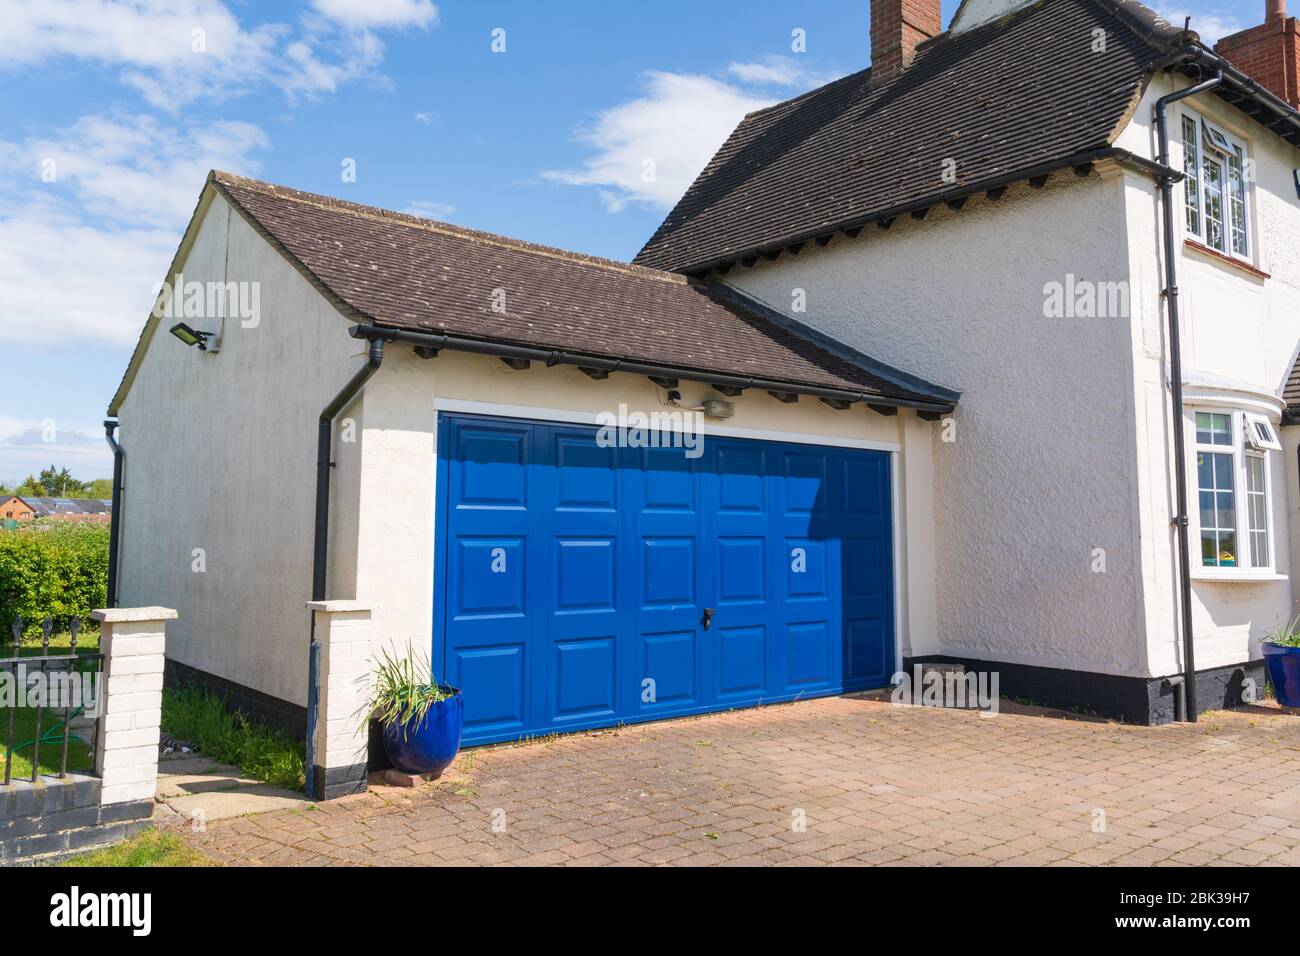 Extérieur d'un garage double avec un métal bleu et au-dessus de la porte fixée à une maison. Hertfordshire. ROYAUME-UNI Banque D'Images